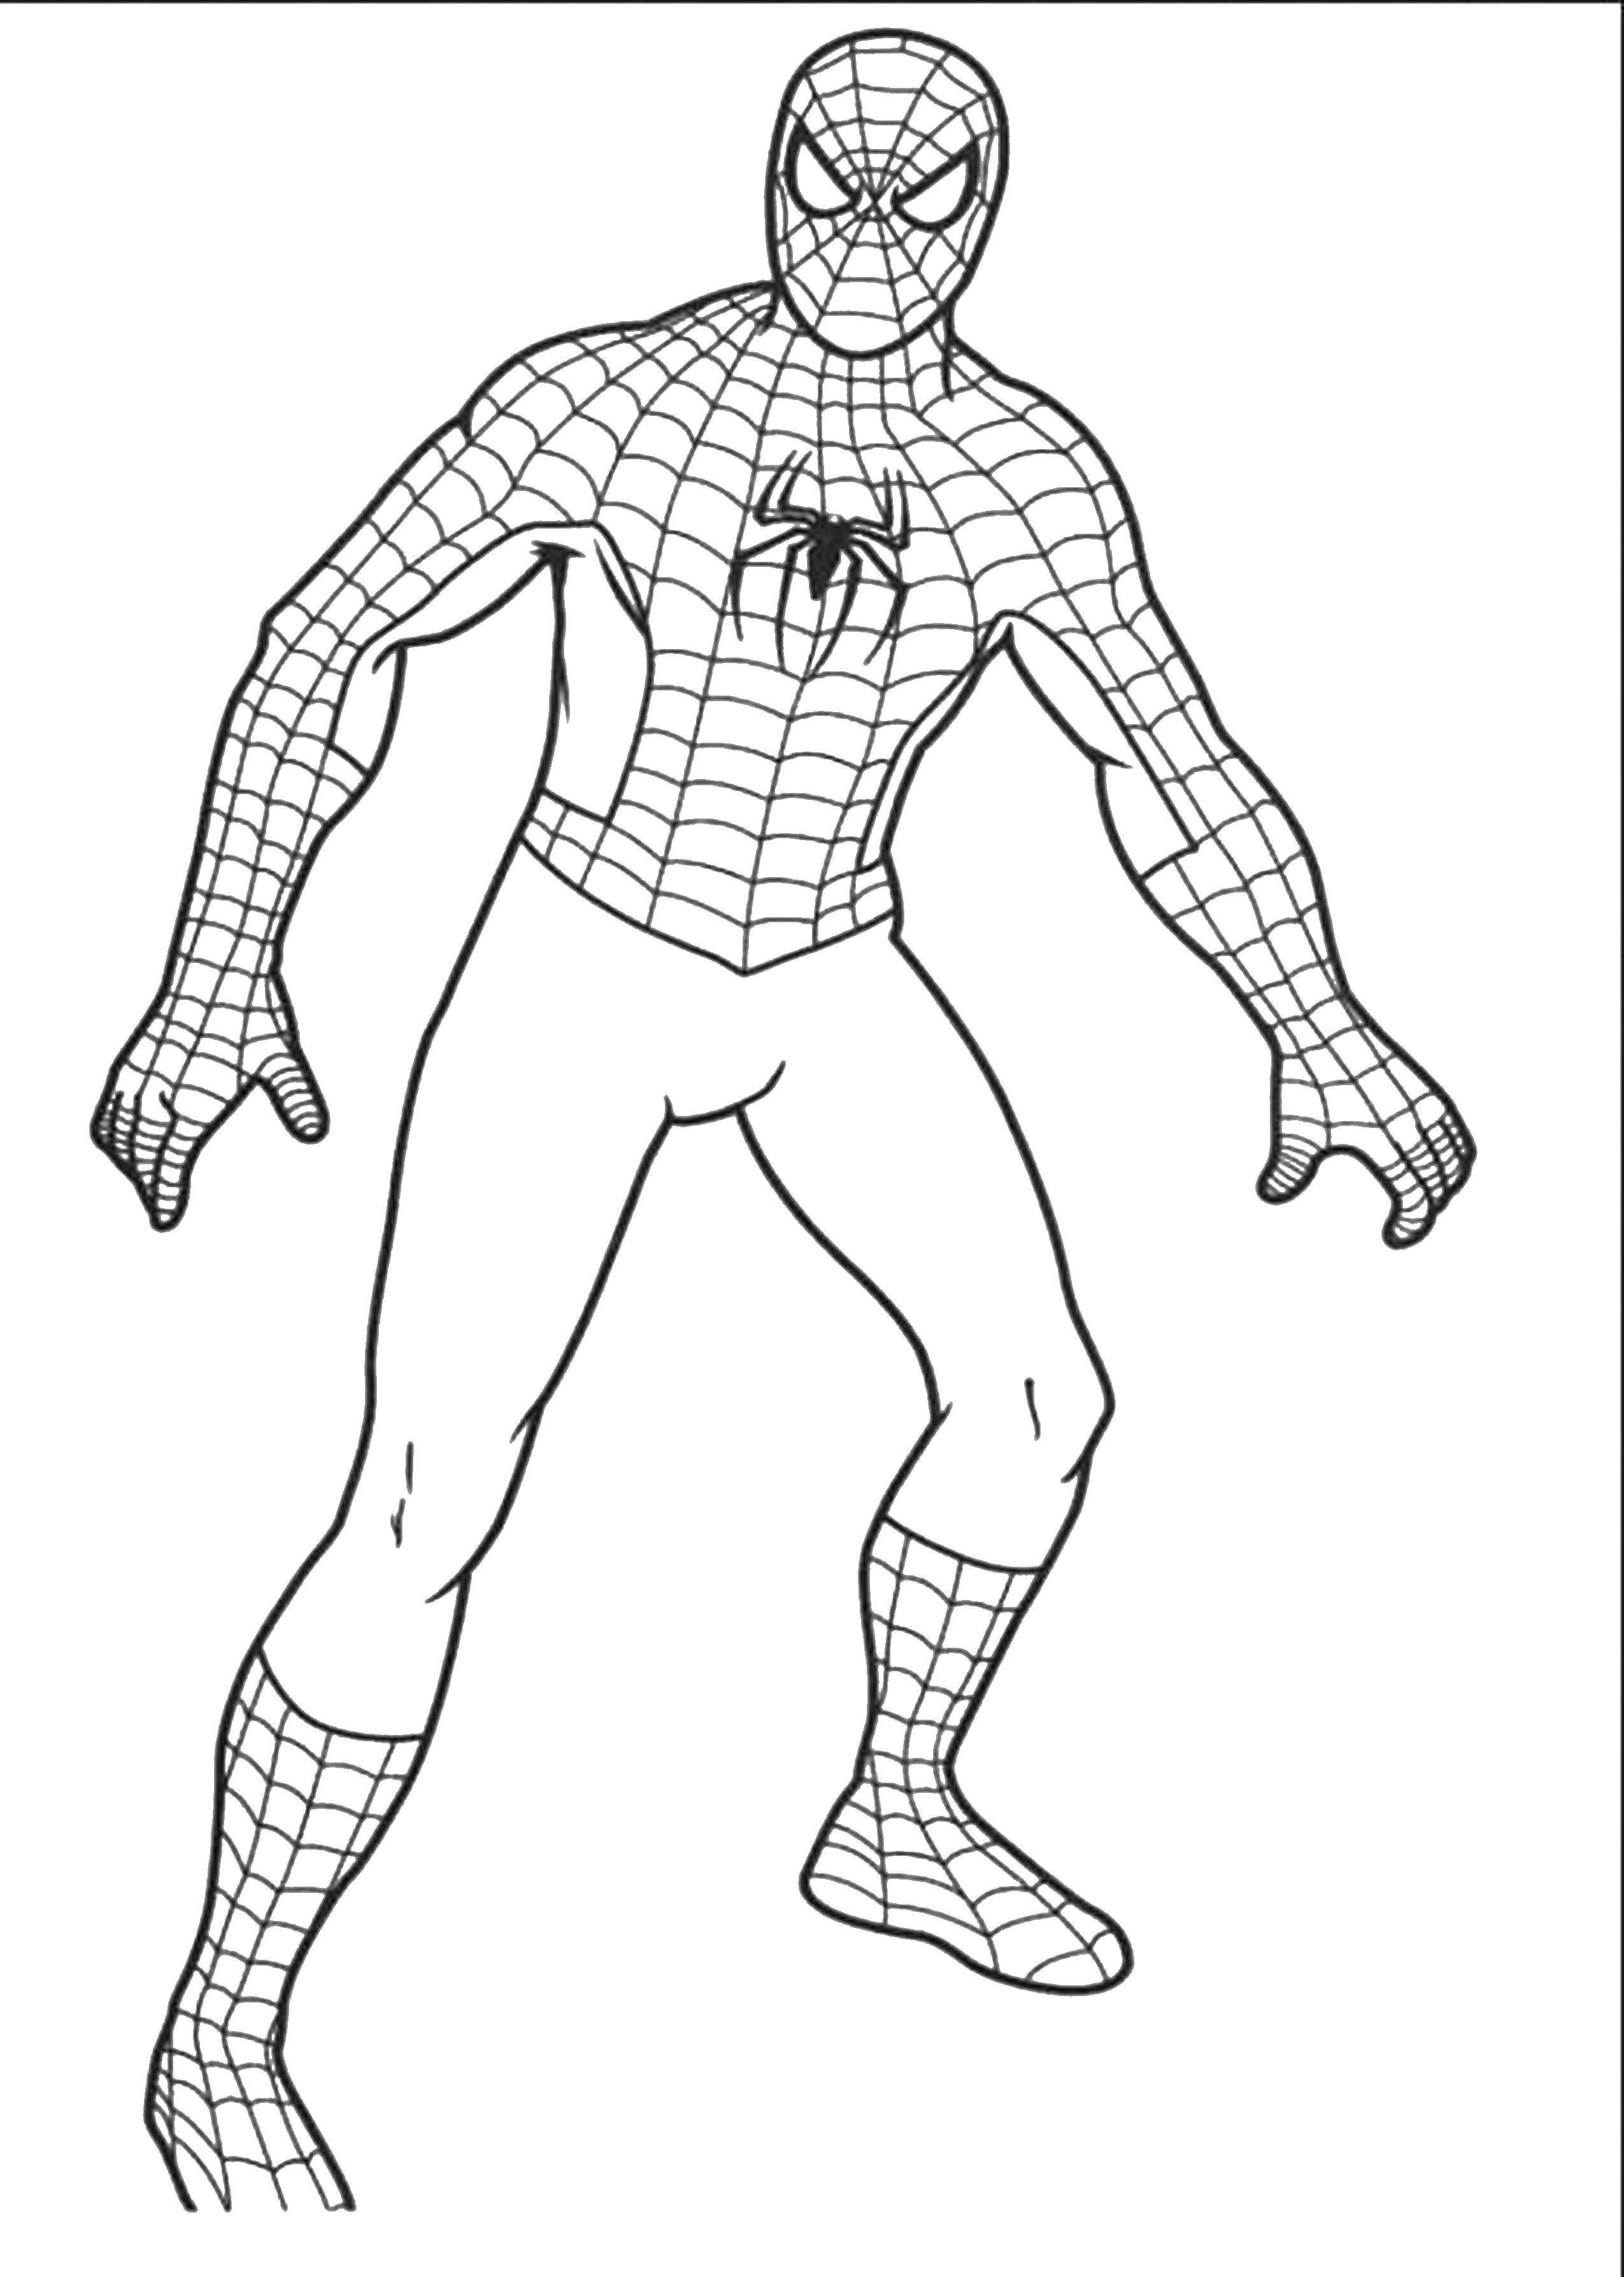 Название: Раскраска Человек паук. Категория: человек паук. Теги: человек паук, спайдермен, фильм, мультфильм.